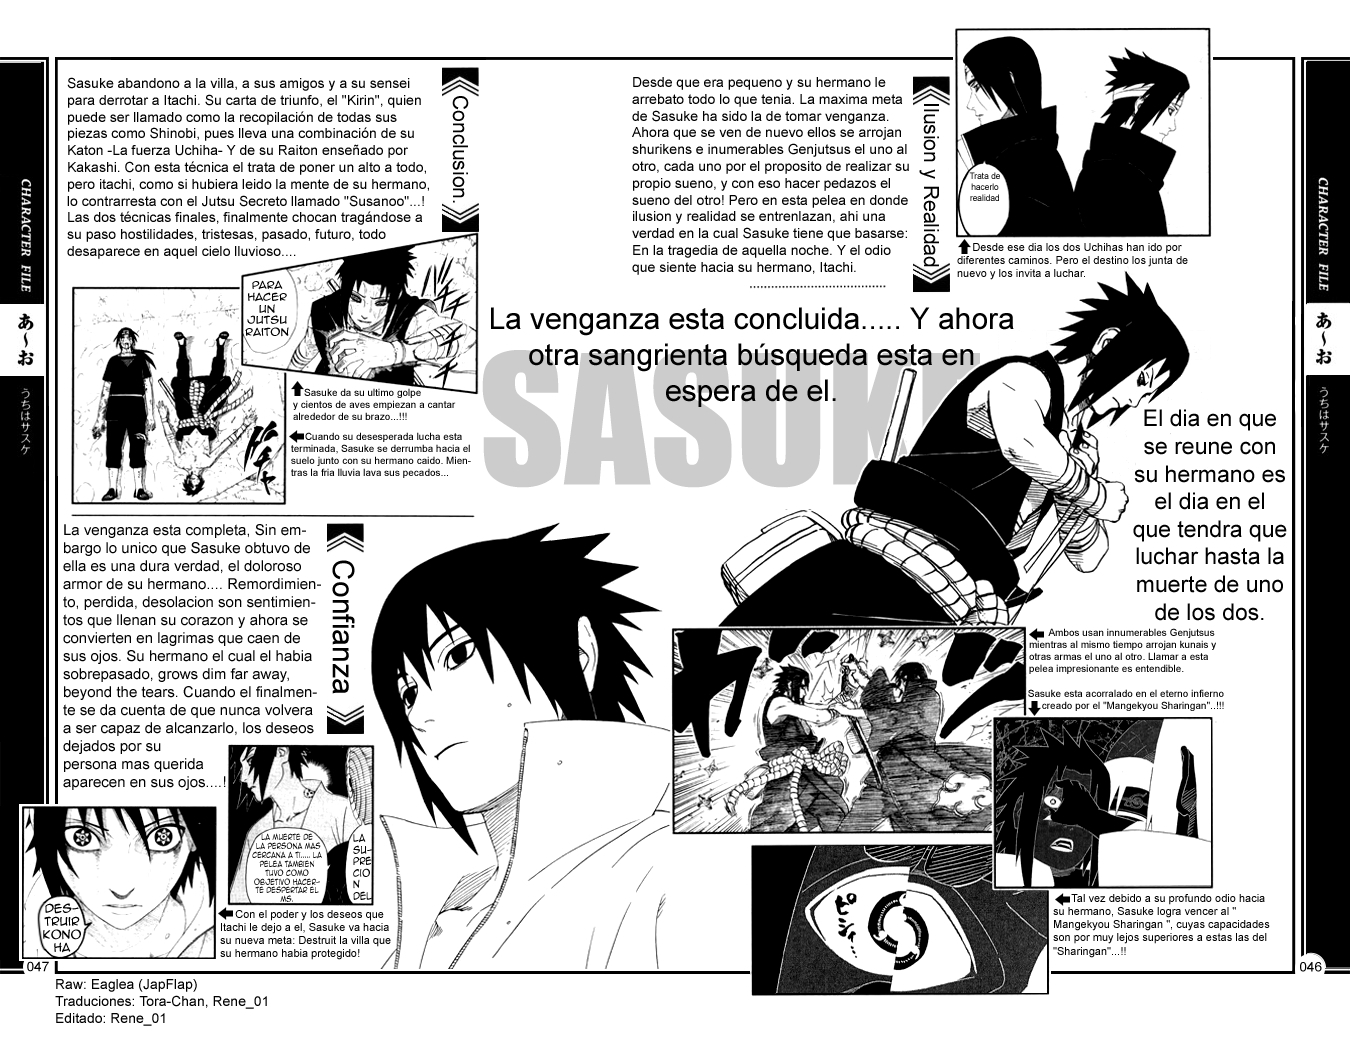 Sasuke Shippuden Manga - Uchiha Sasuke Photo (8192650) - Fanpop